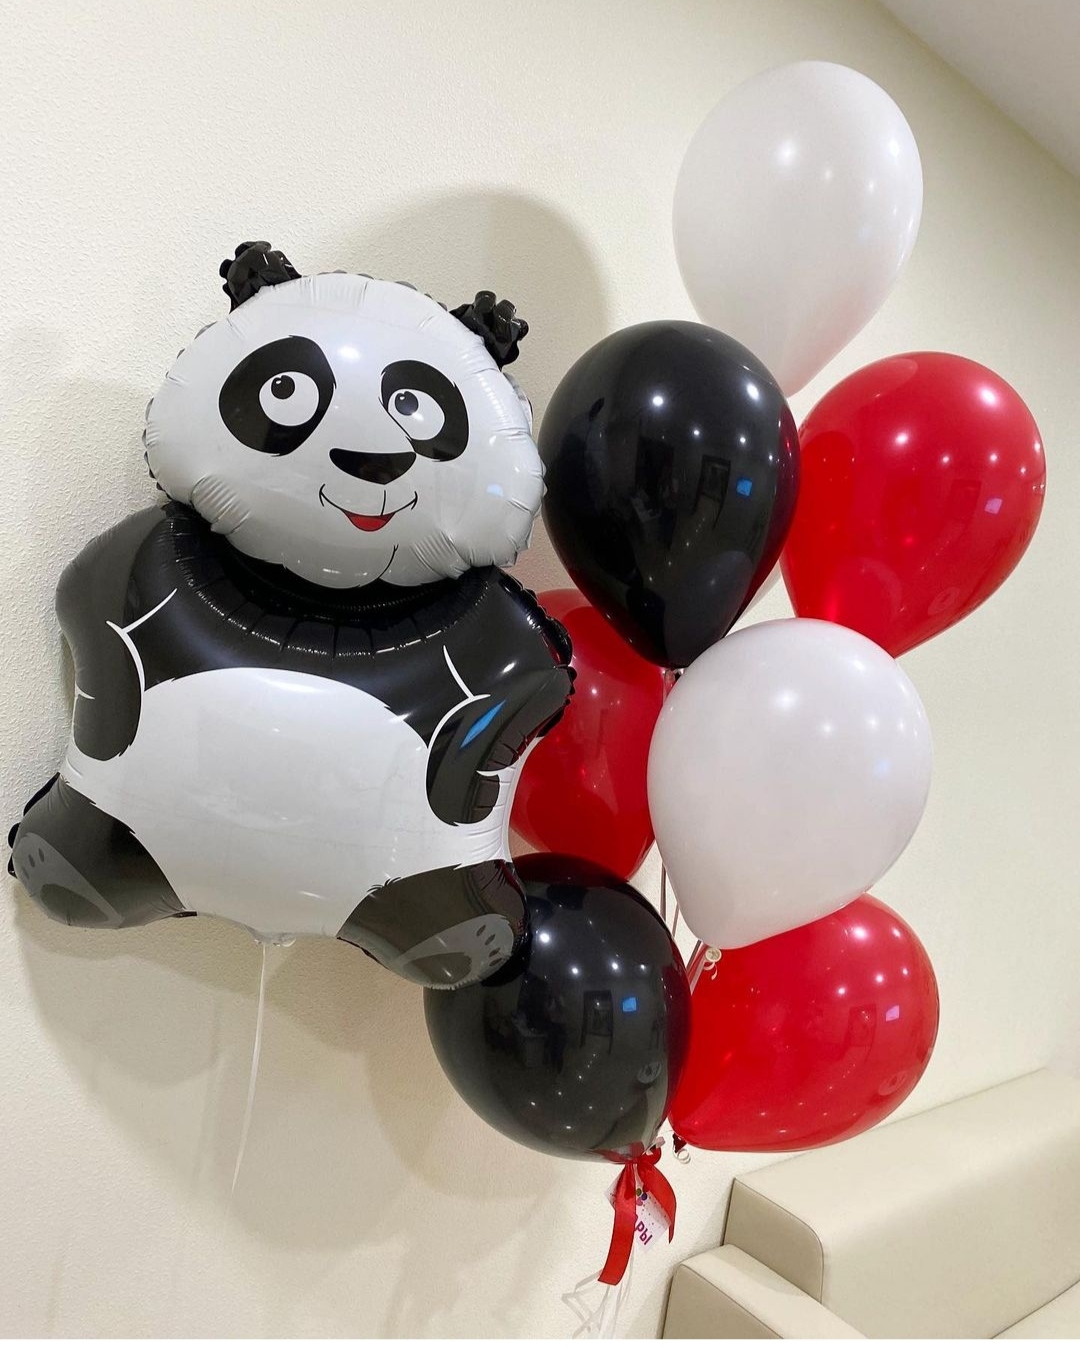 фольгированный шар панда с красными и белыми шариками